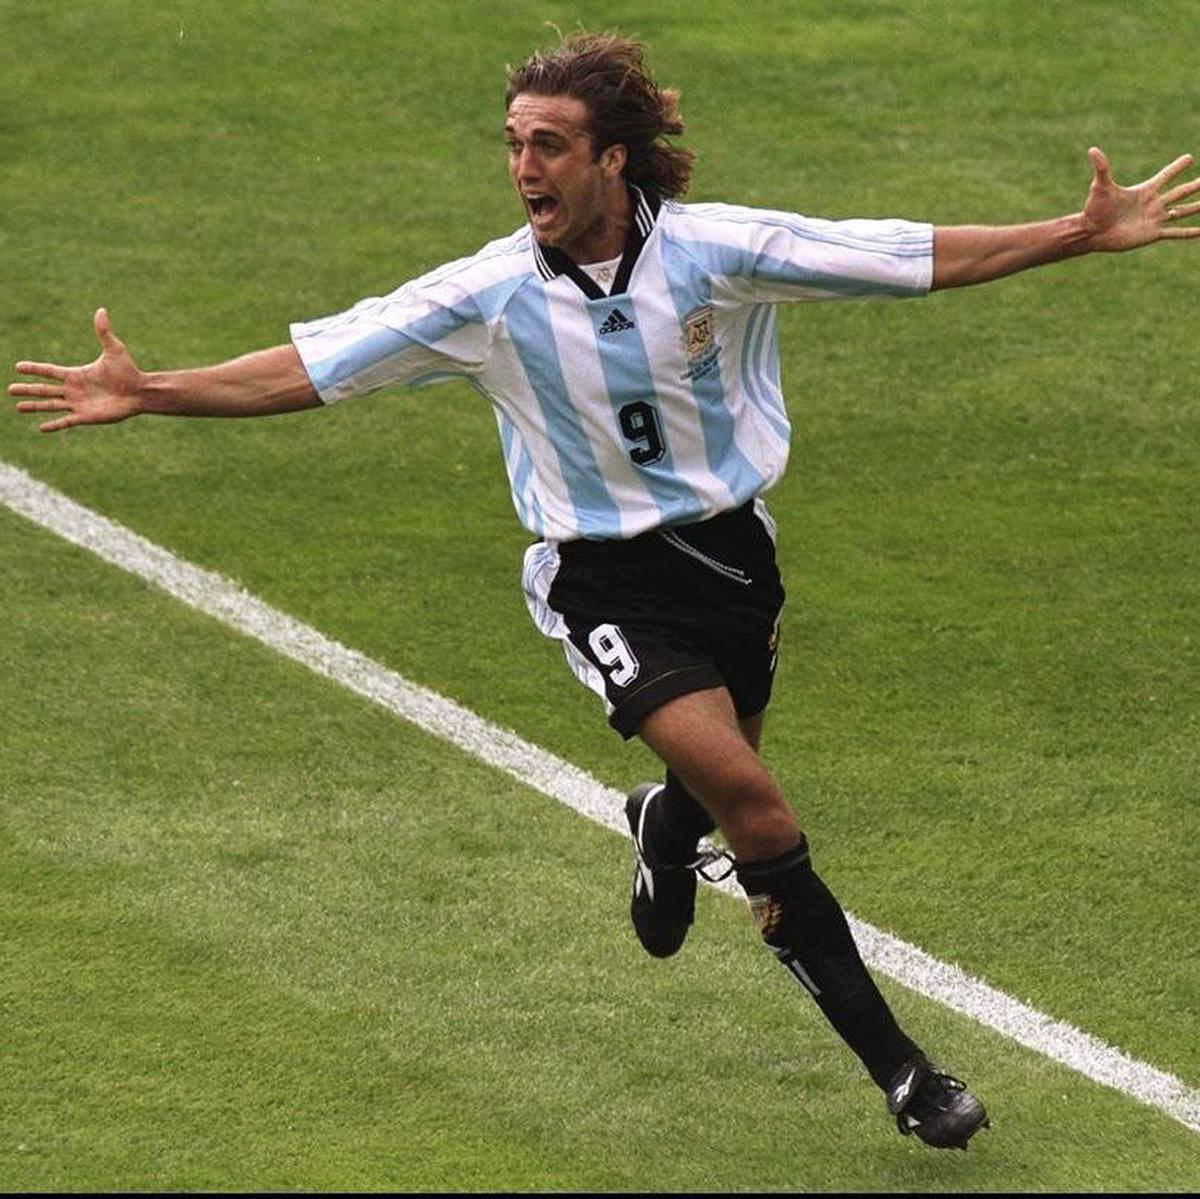 El goleado argentino | El Bati, una de las figuras emblemática del futbol argentino. Fuente: Instagram @gabrielbatistutaok